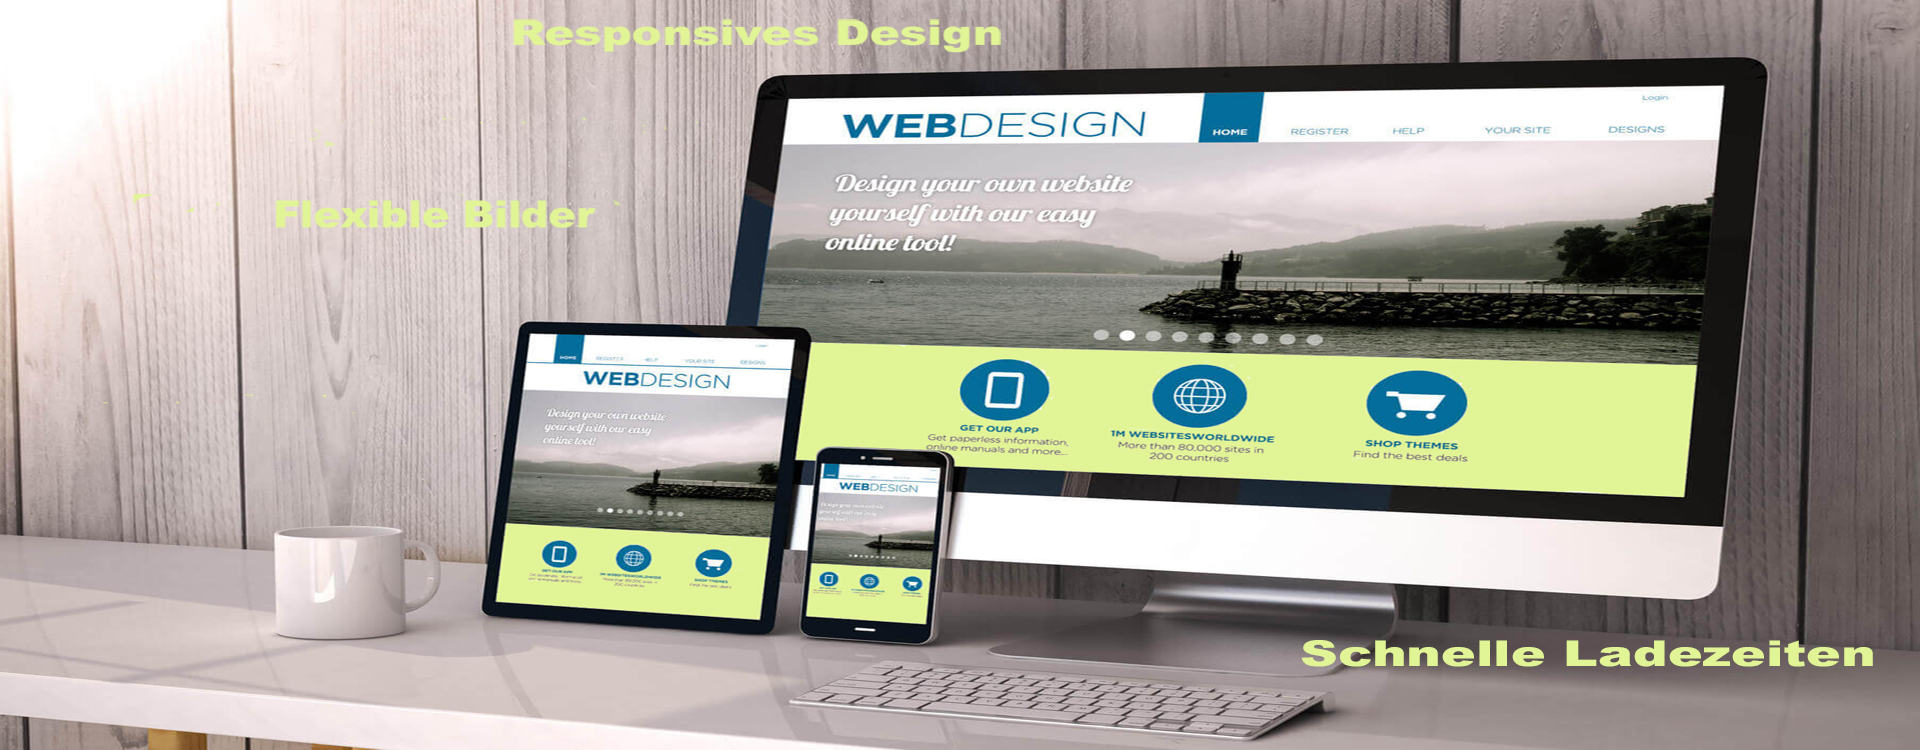 Beispielbild responsives Webdesign